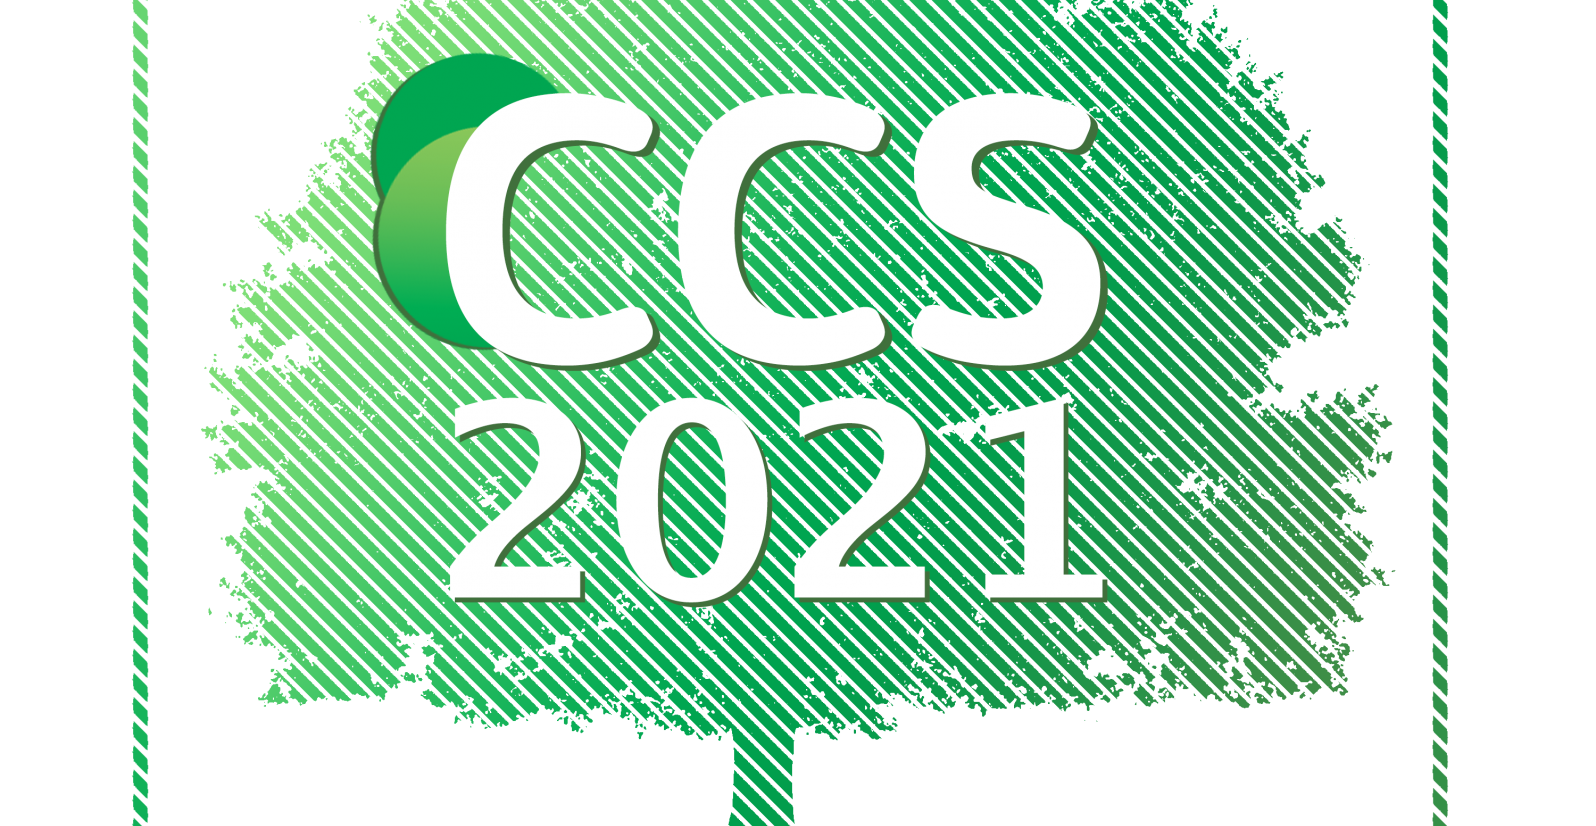 Conferência Campus Sustentável 2021